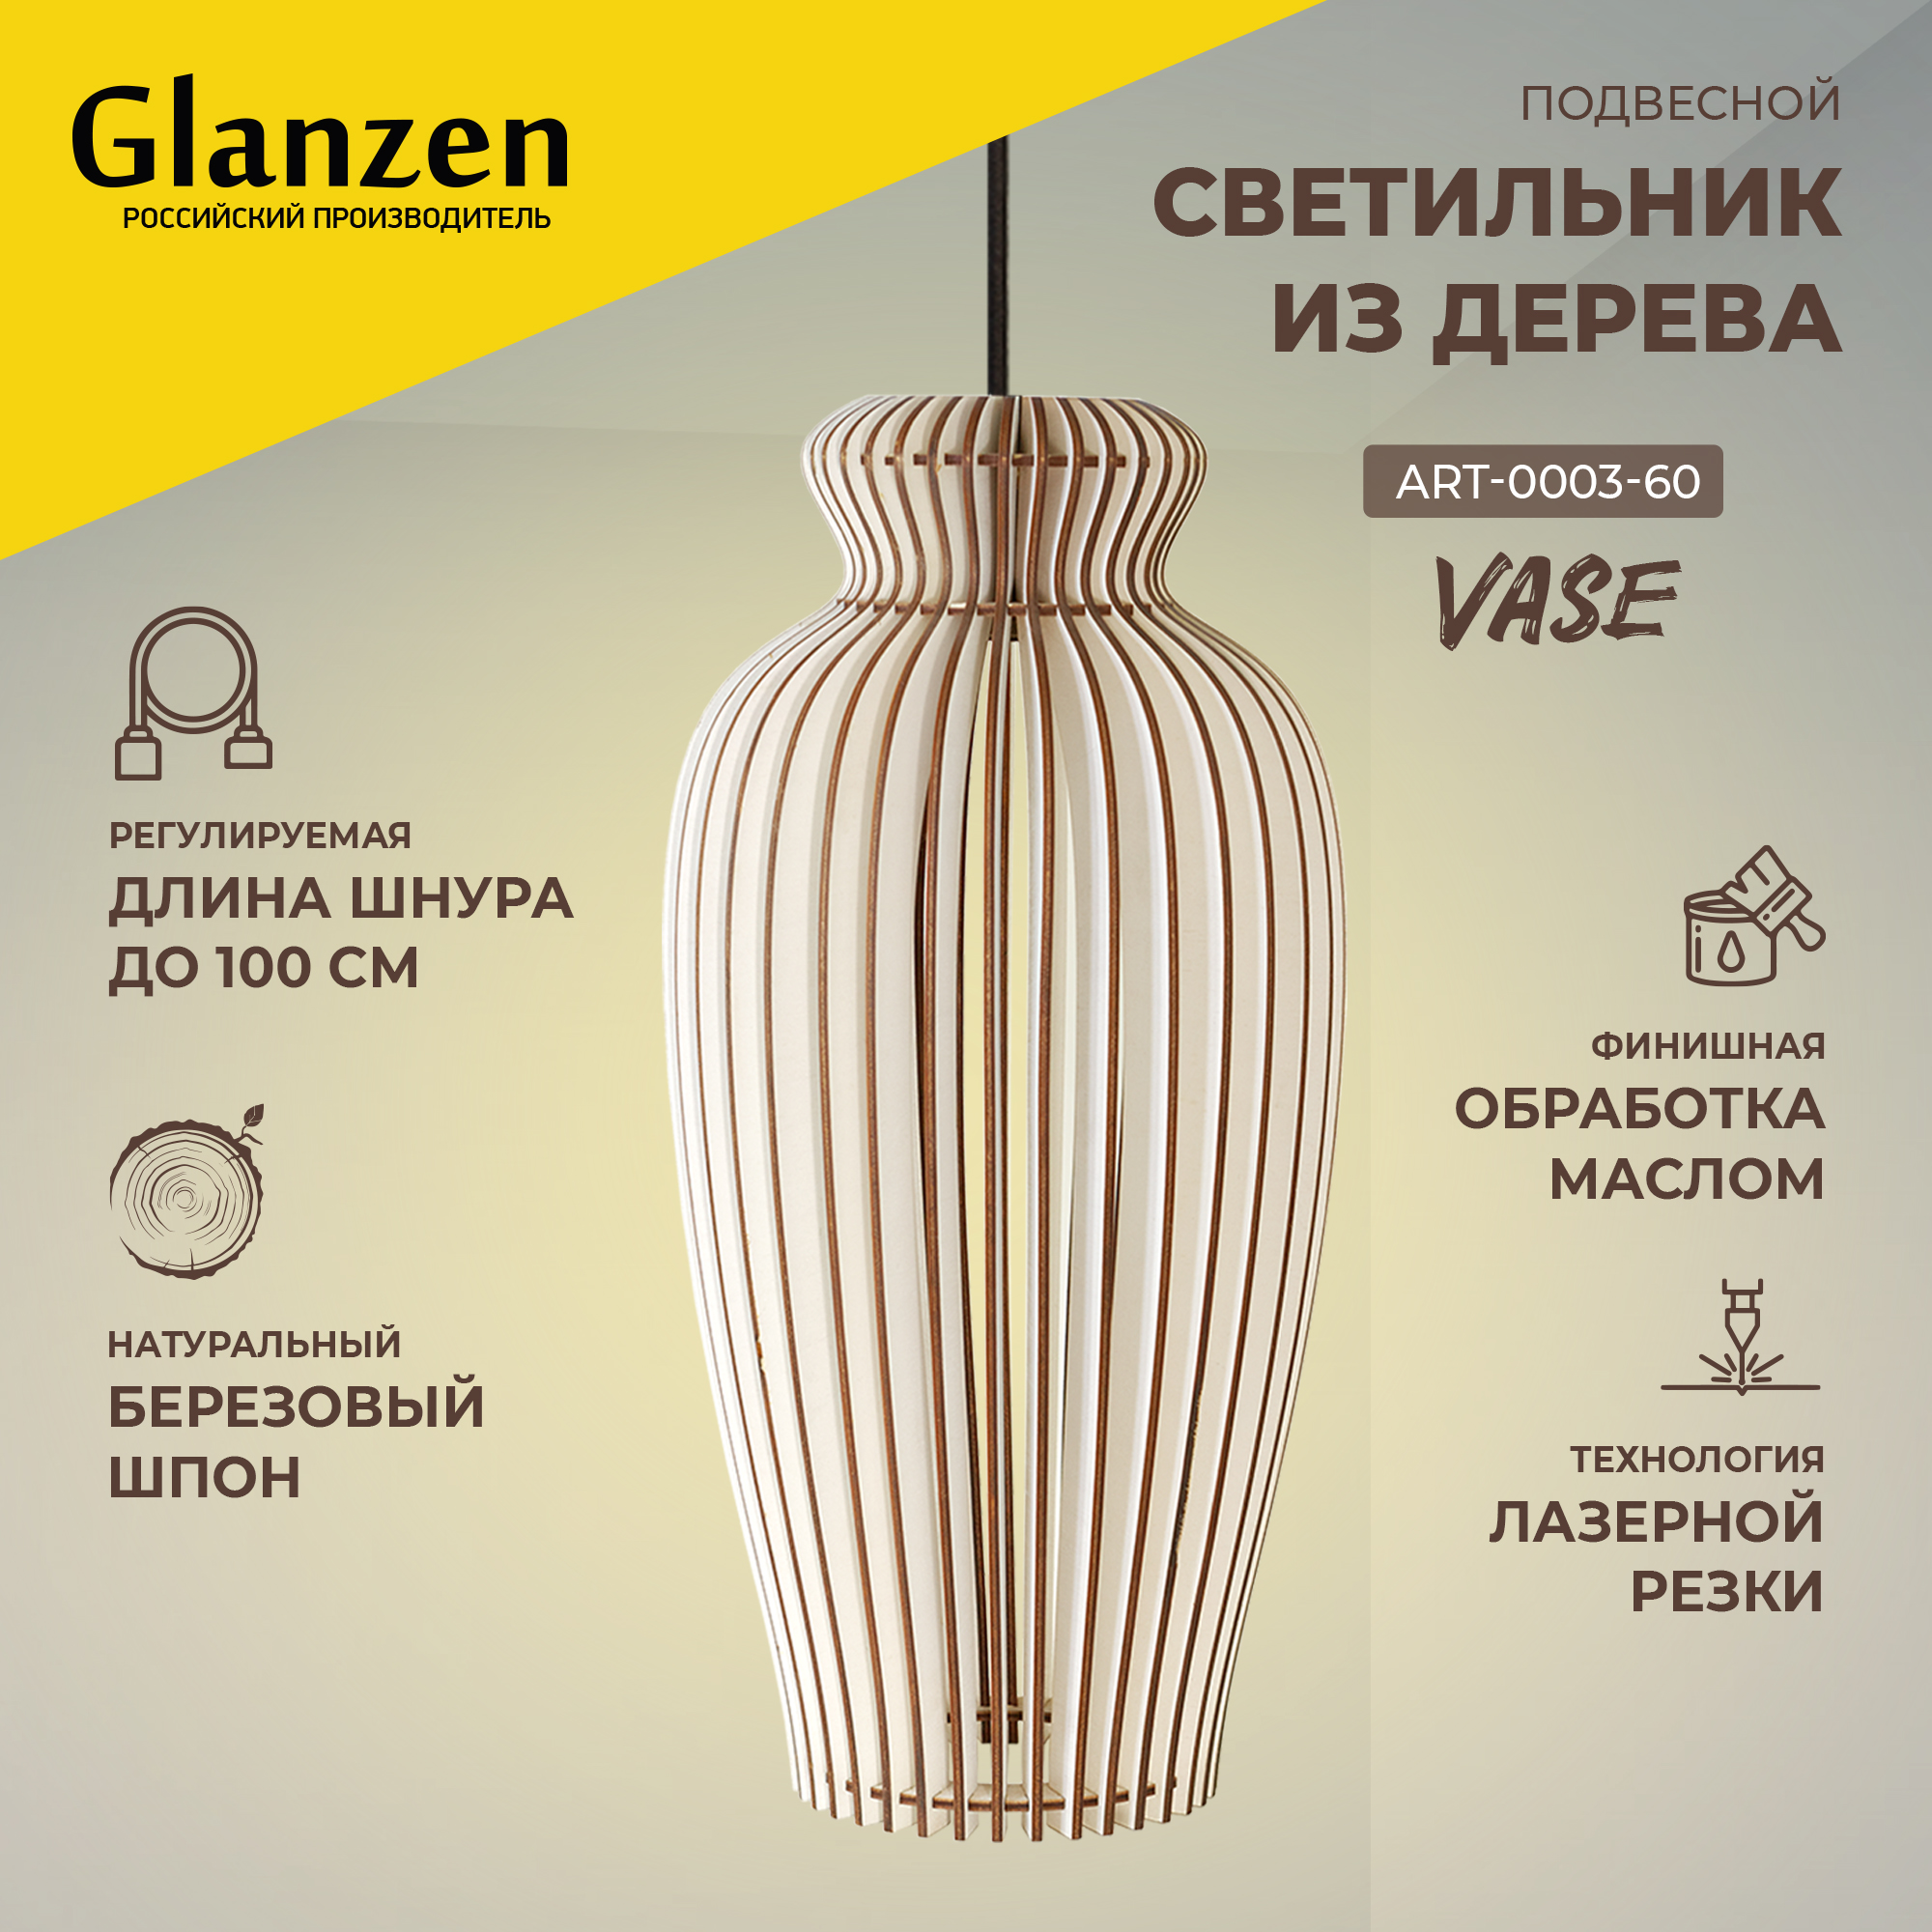 Подвесной светильник из дерева GLANZEN ART-0003-60-nude vase